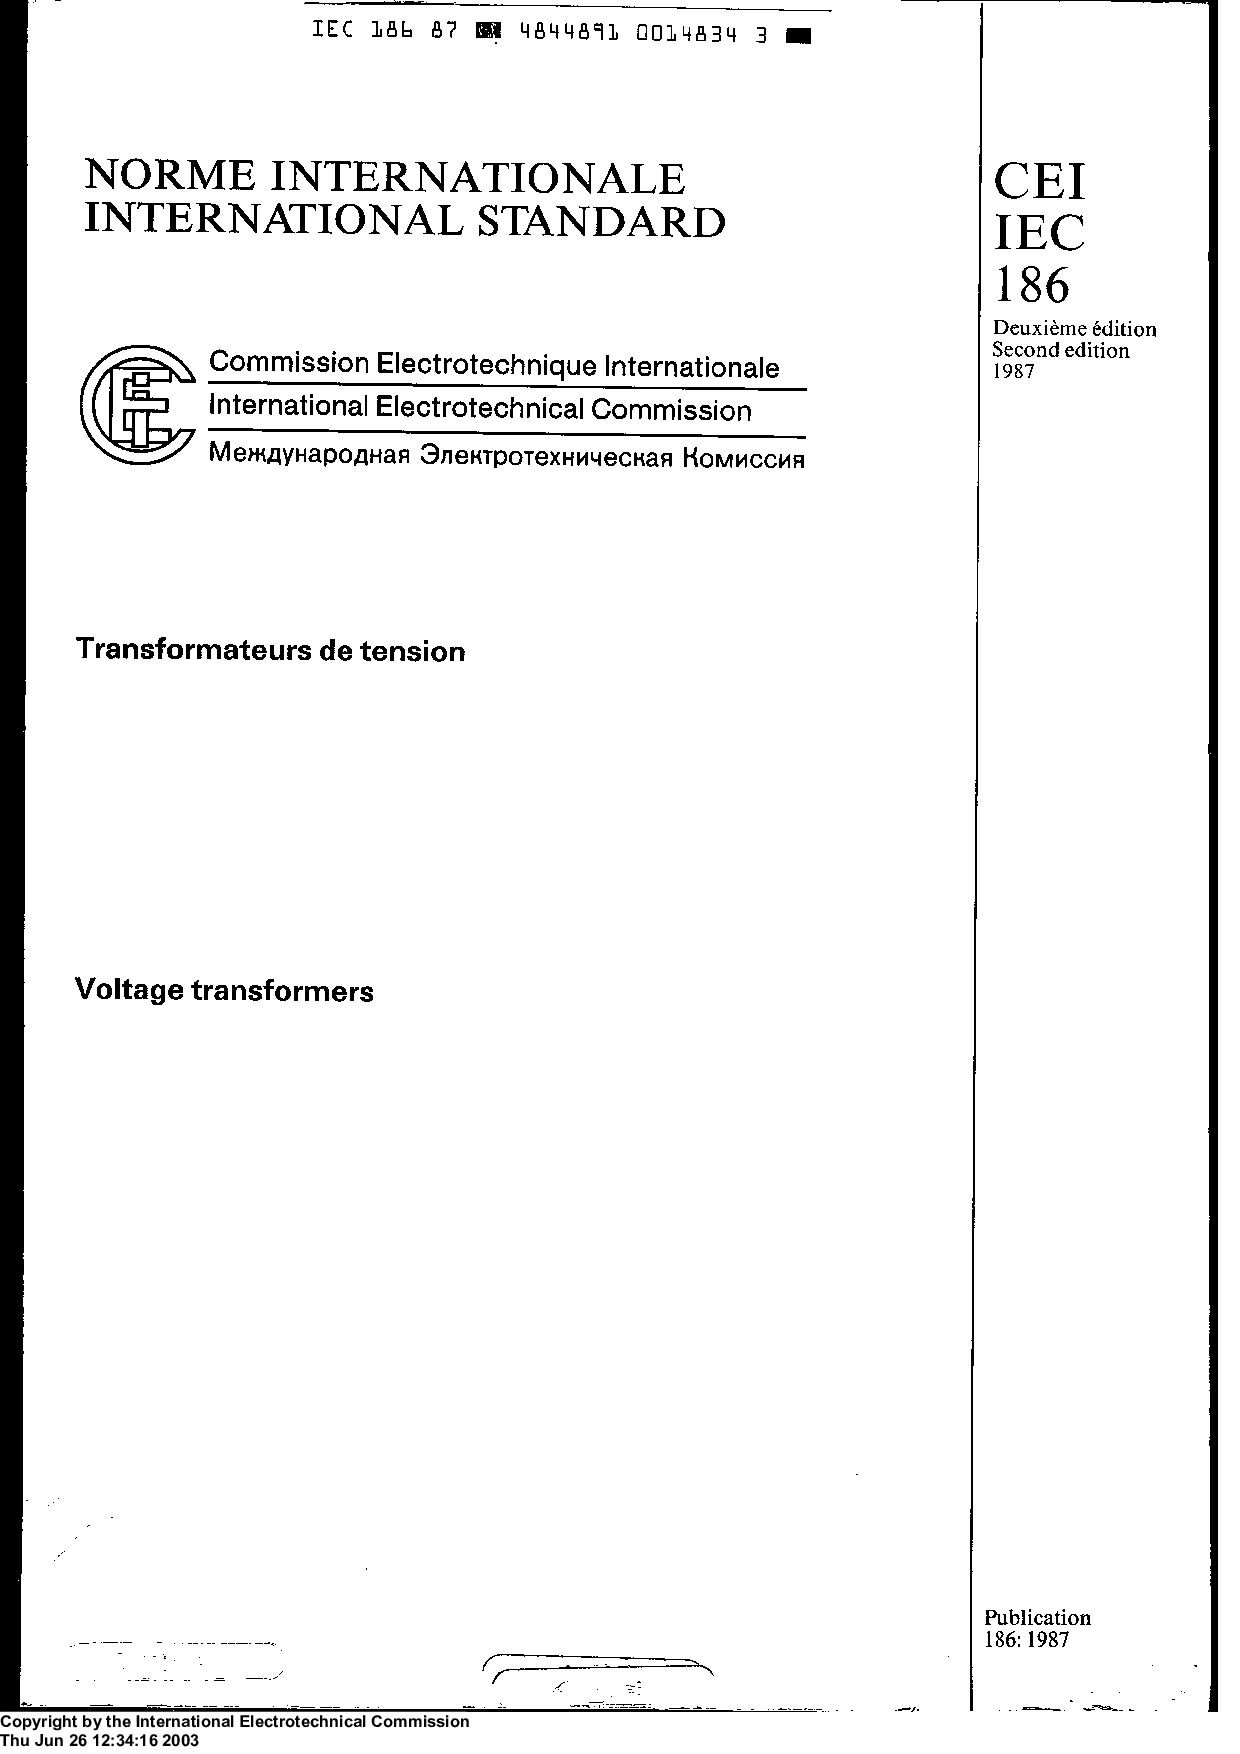 IEC 60186:1987封面图